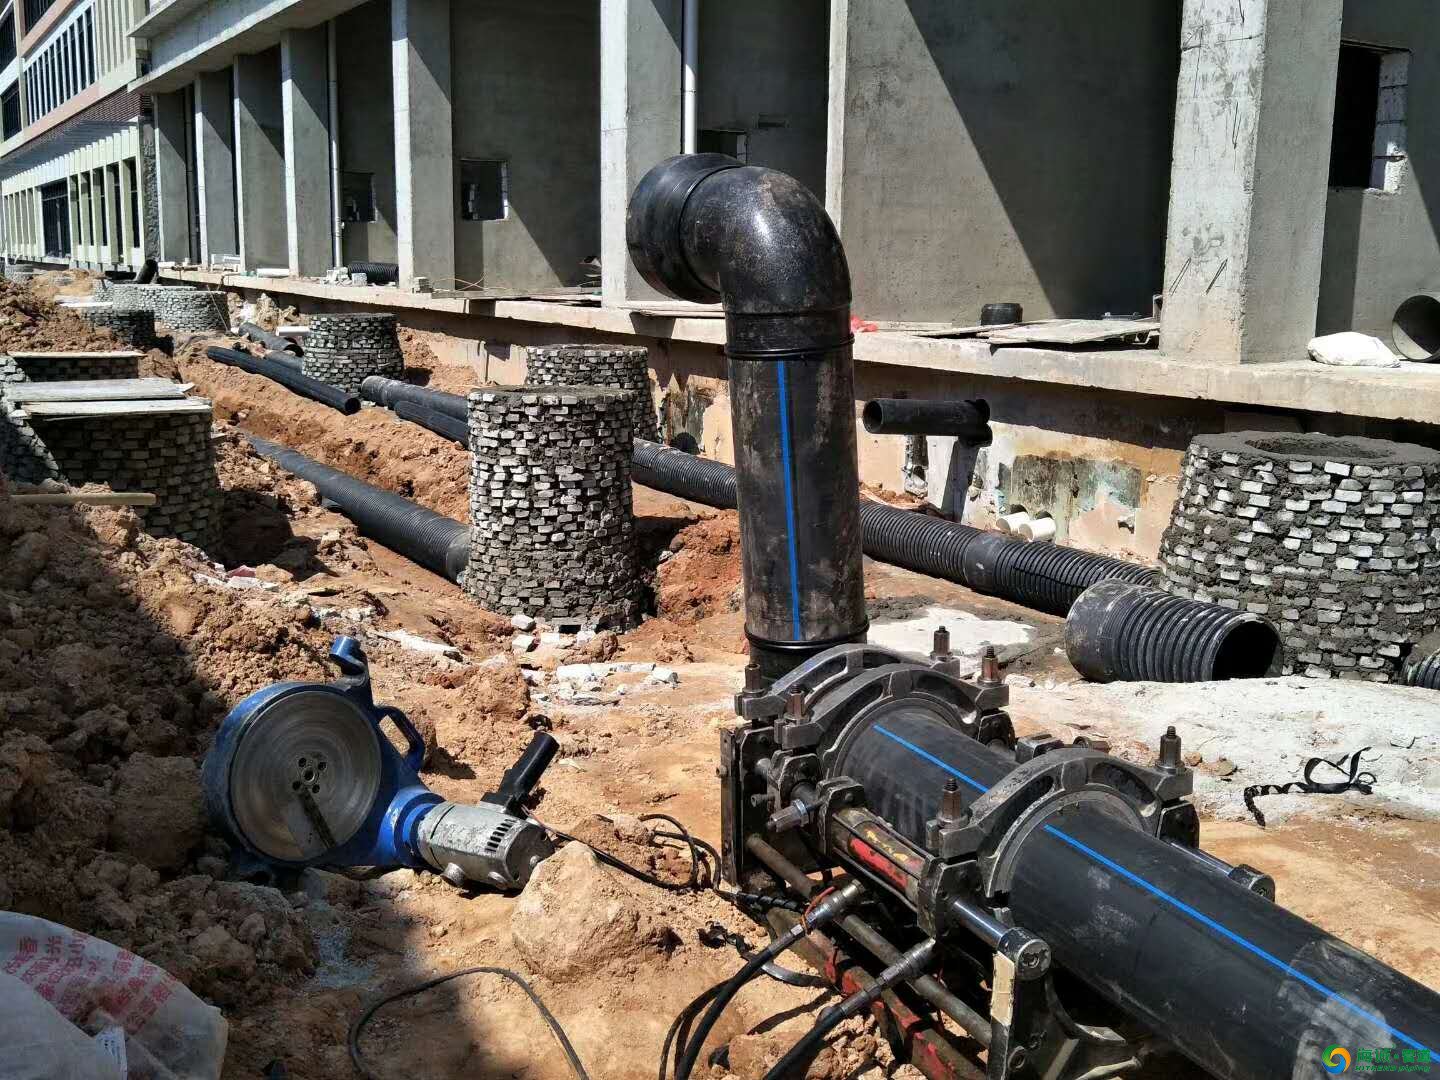 [市政排水管道]详述市政排水管道建设工程 - 土木在线